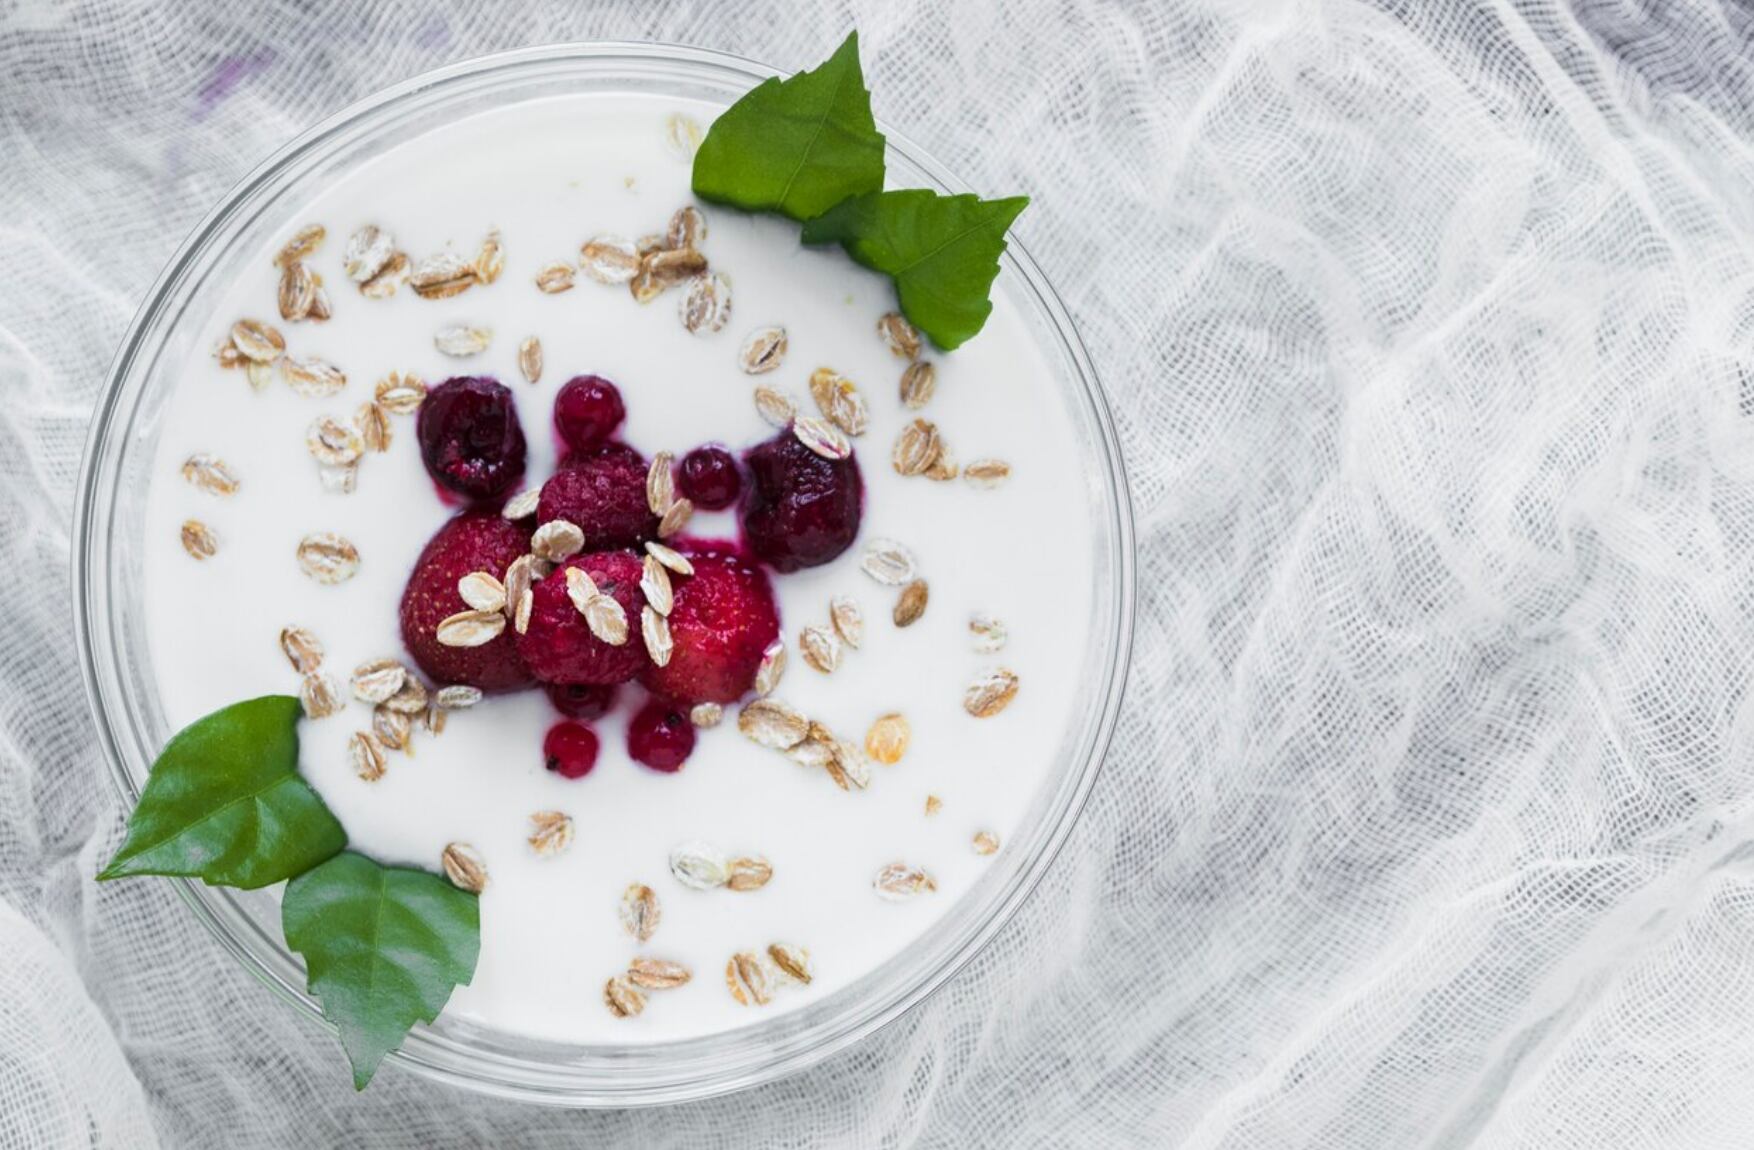 5 beneficios de comer yogurt griego en lugar del clásico